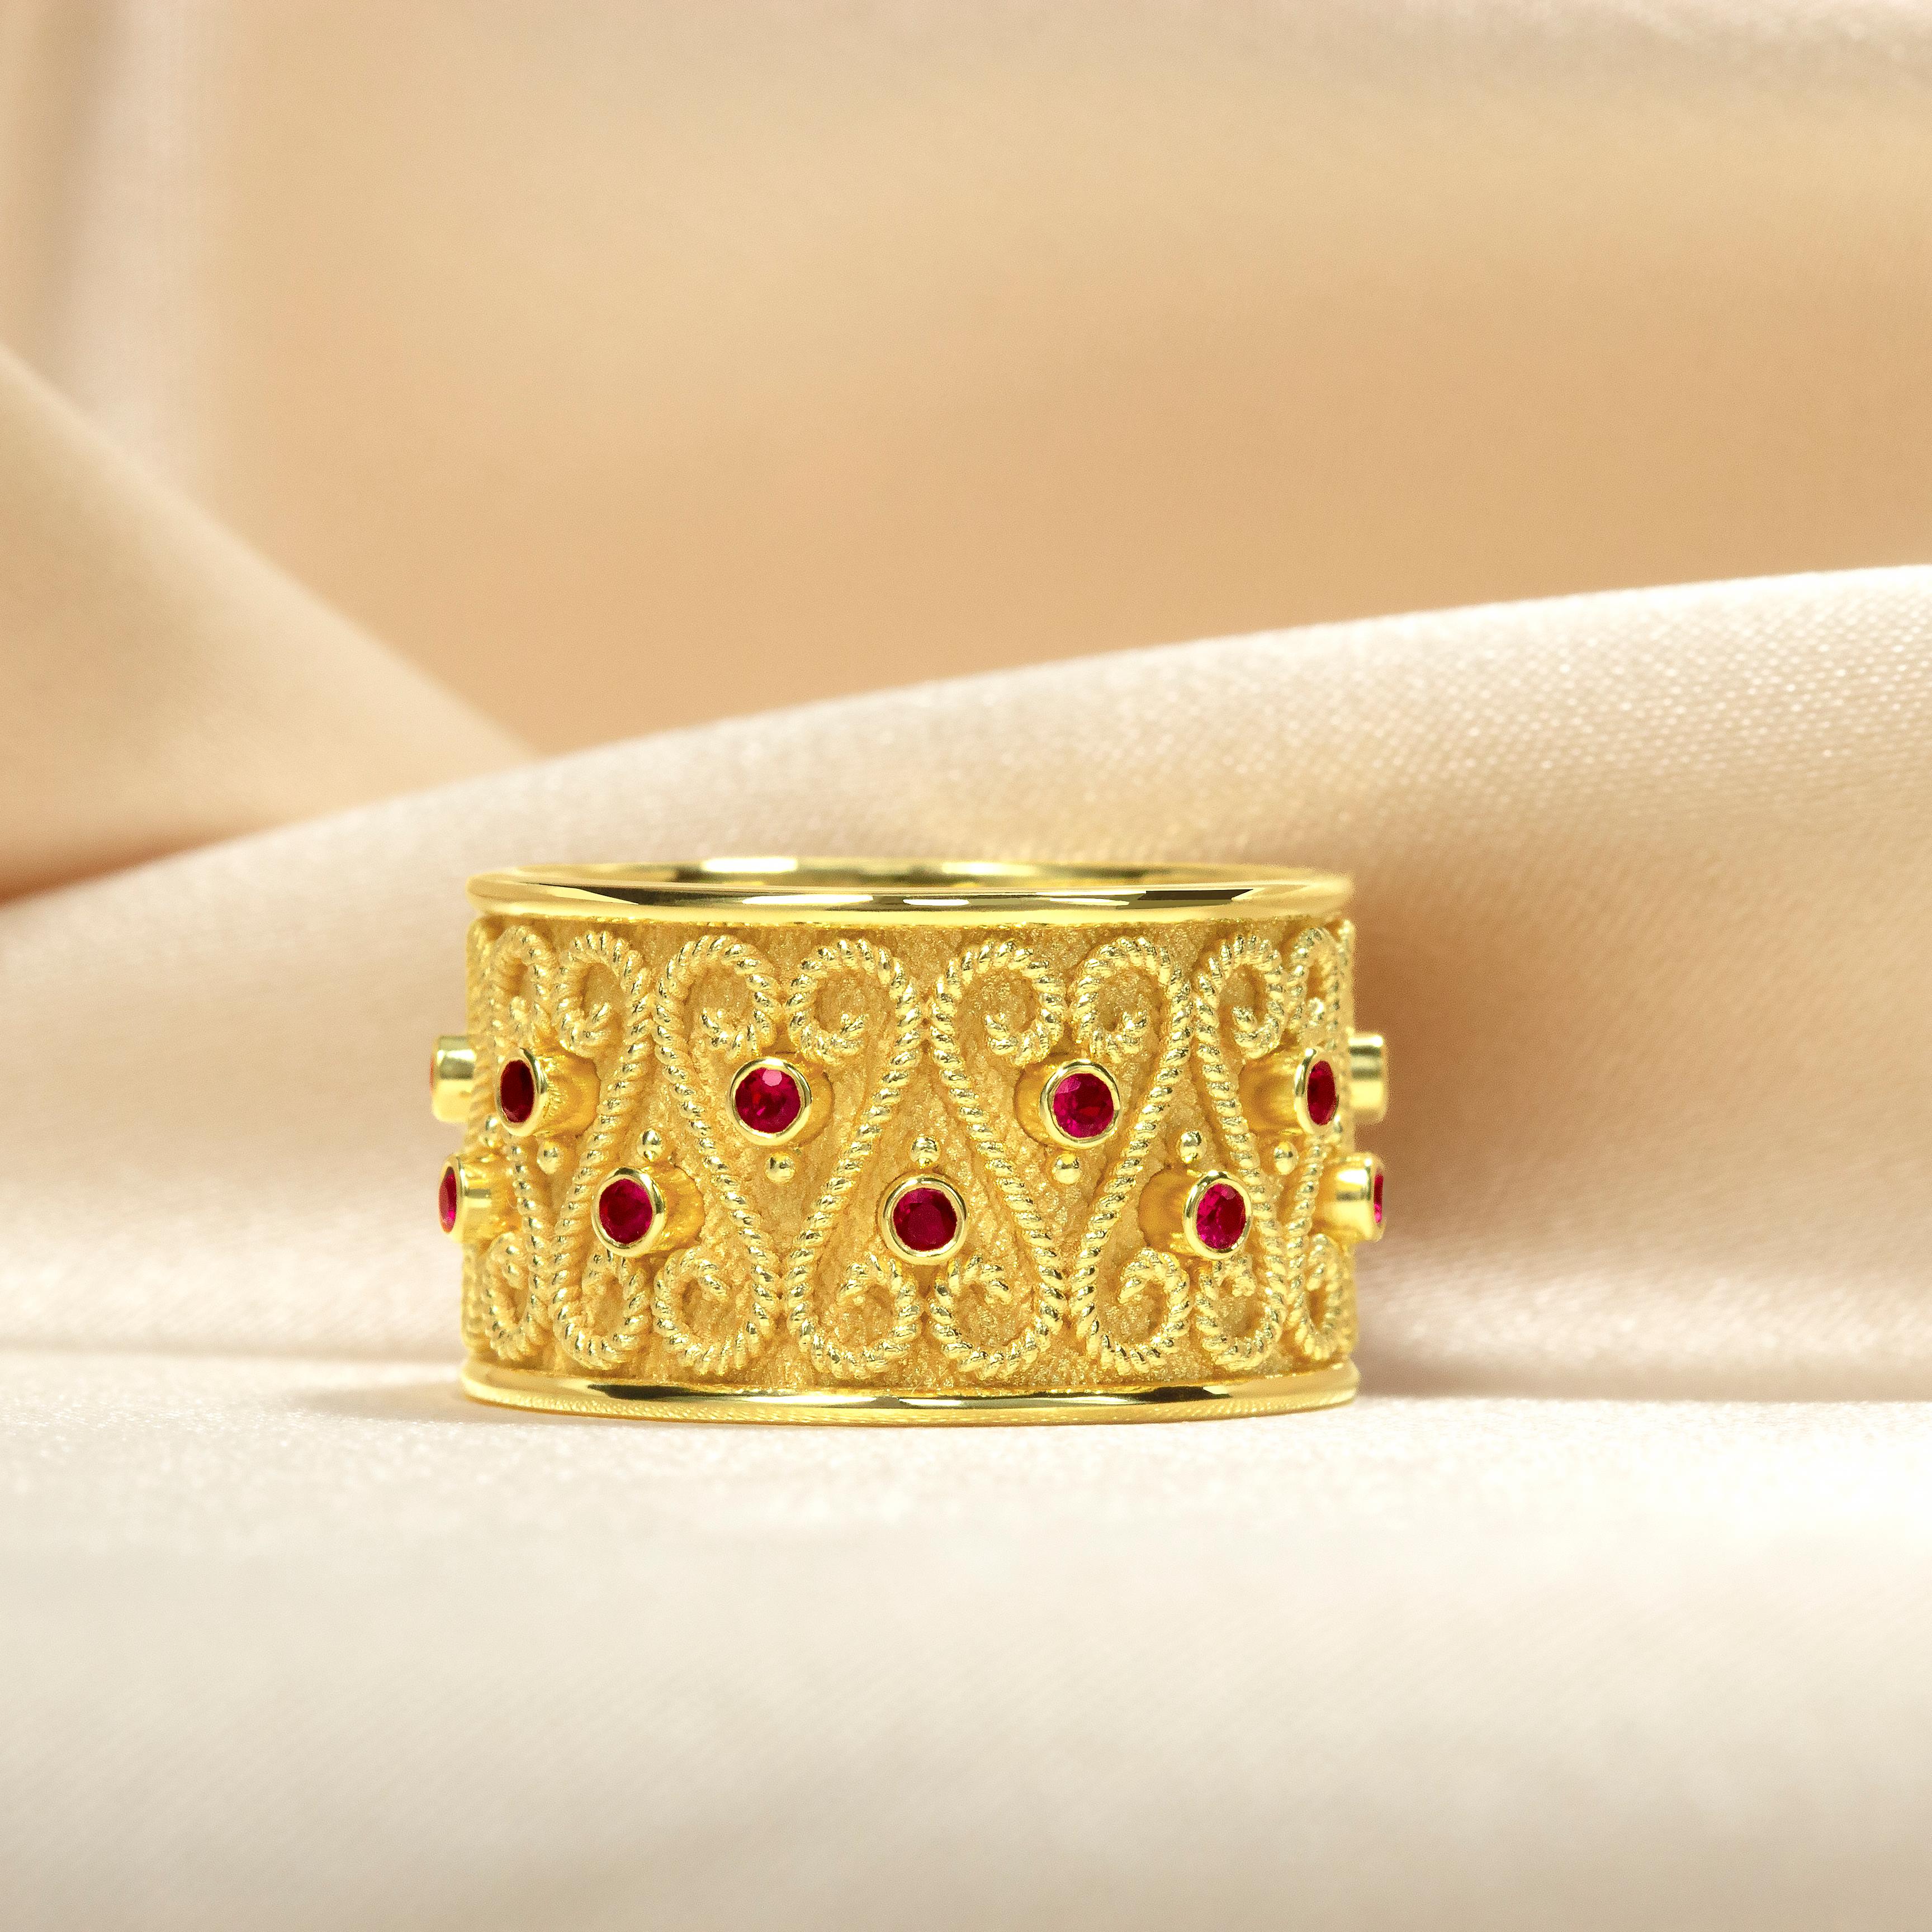 Cet élégant anneau en or, orné de rubis chatoyants, est le choix parfait pour une femme sophistiquée. Confectionné dans des matières luxueuses, il ajoute une touche d'opulence à toute garde-robe. Cette magnifique bague, fruit d'un travail artisanal